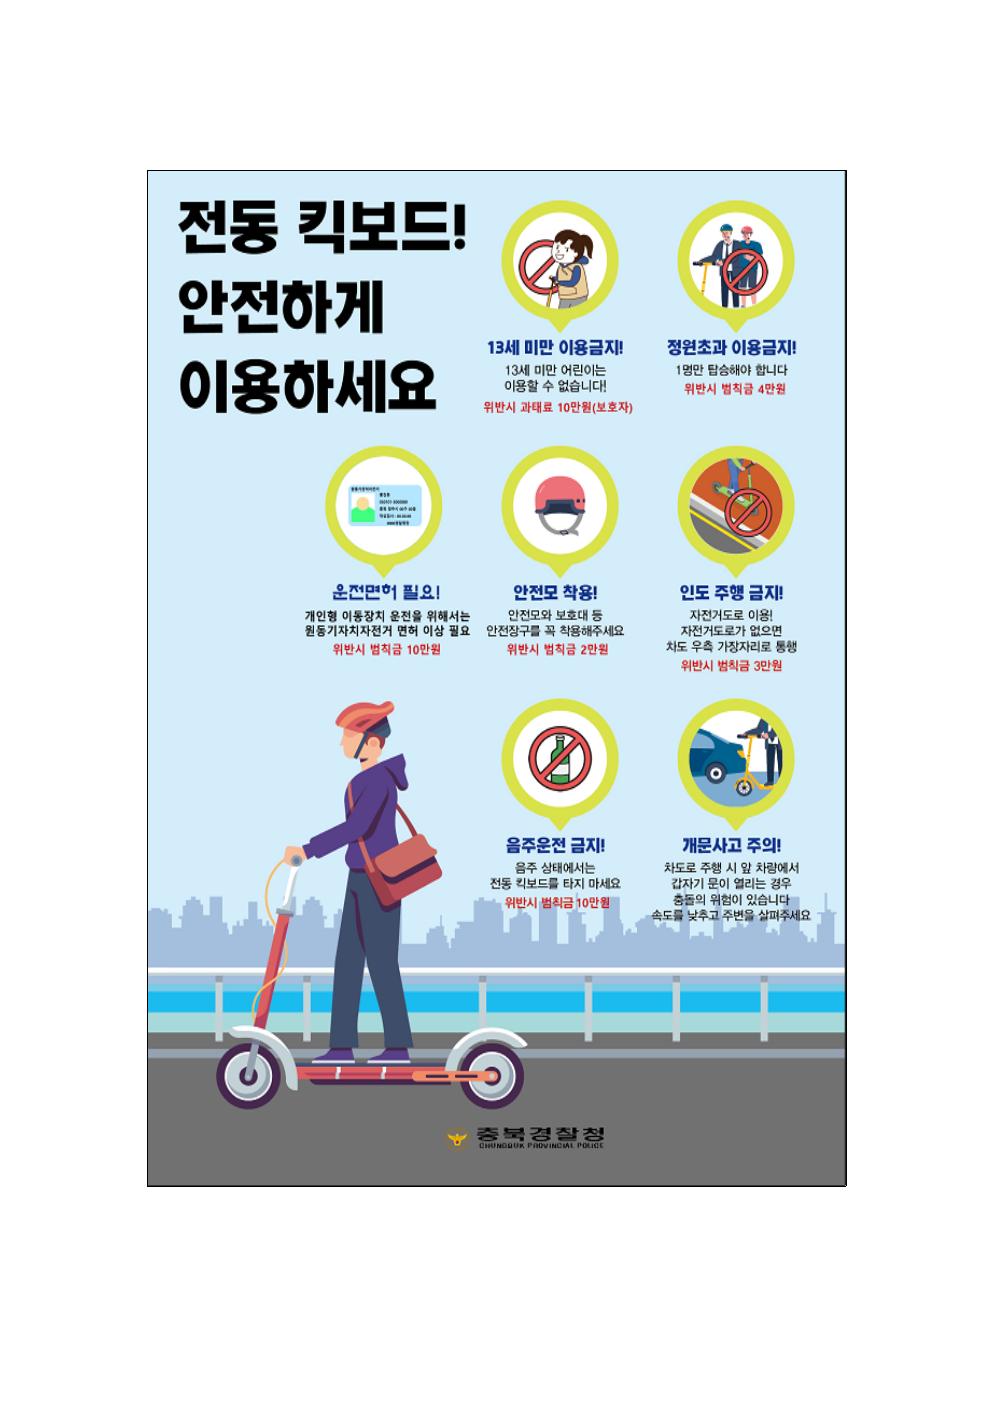 괴산경찰서 생활안전교통과_개인형이동장치(PM) 홍보이미지001